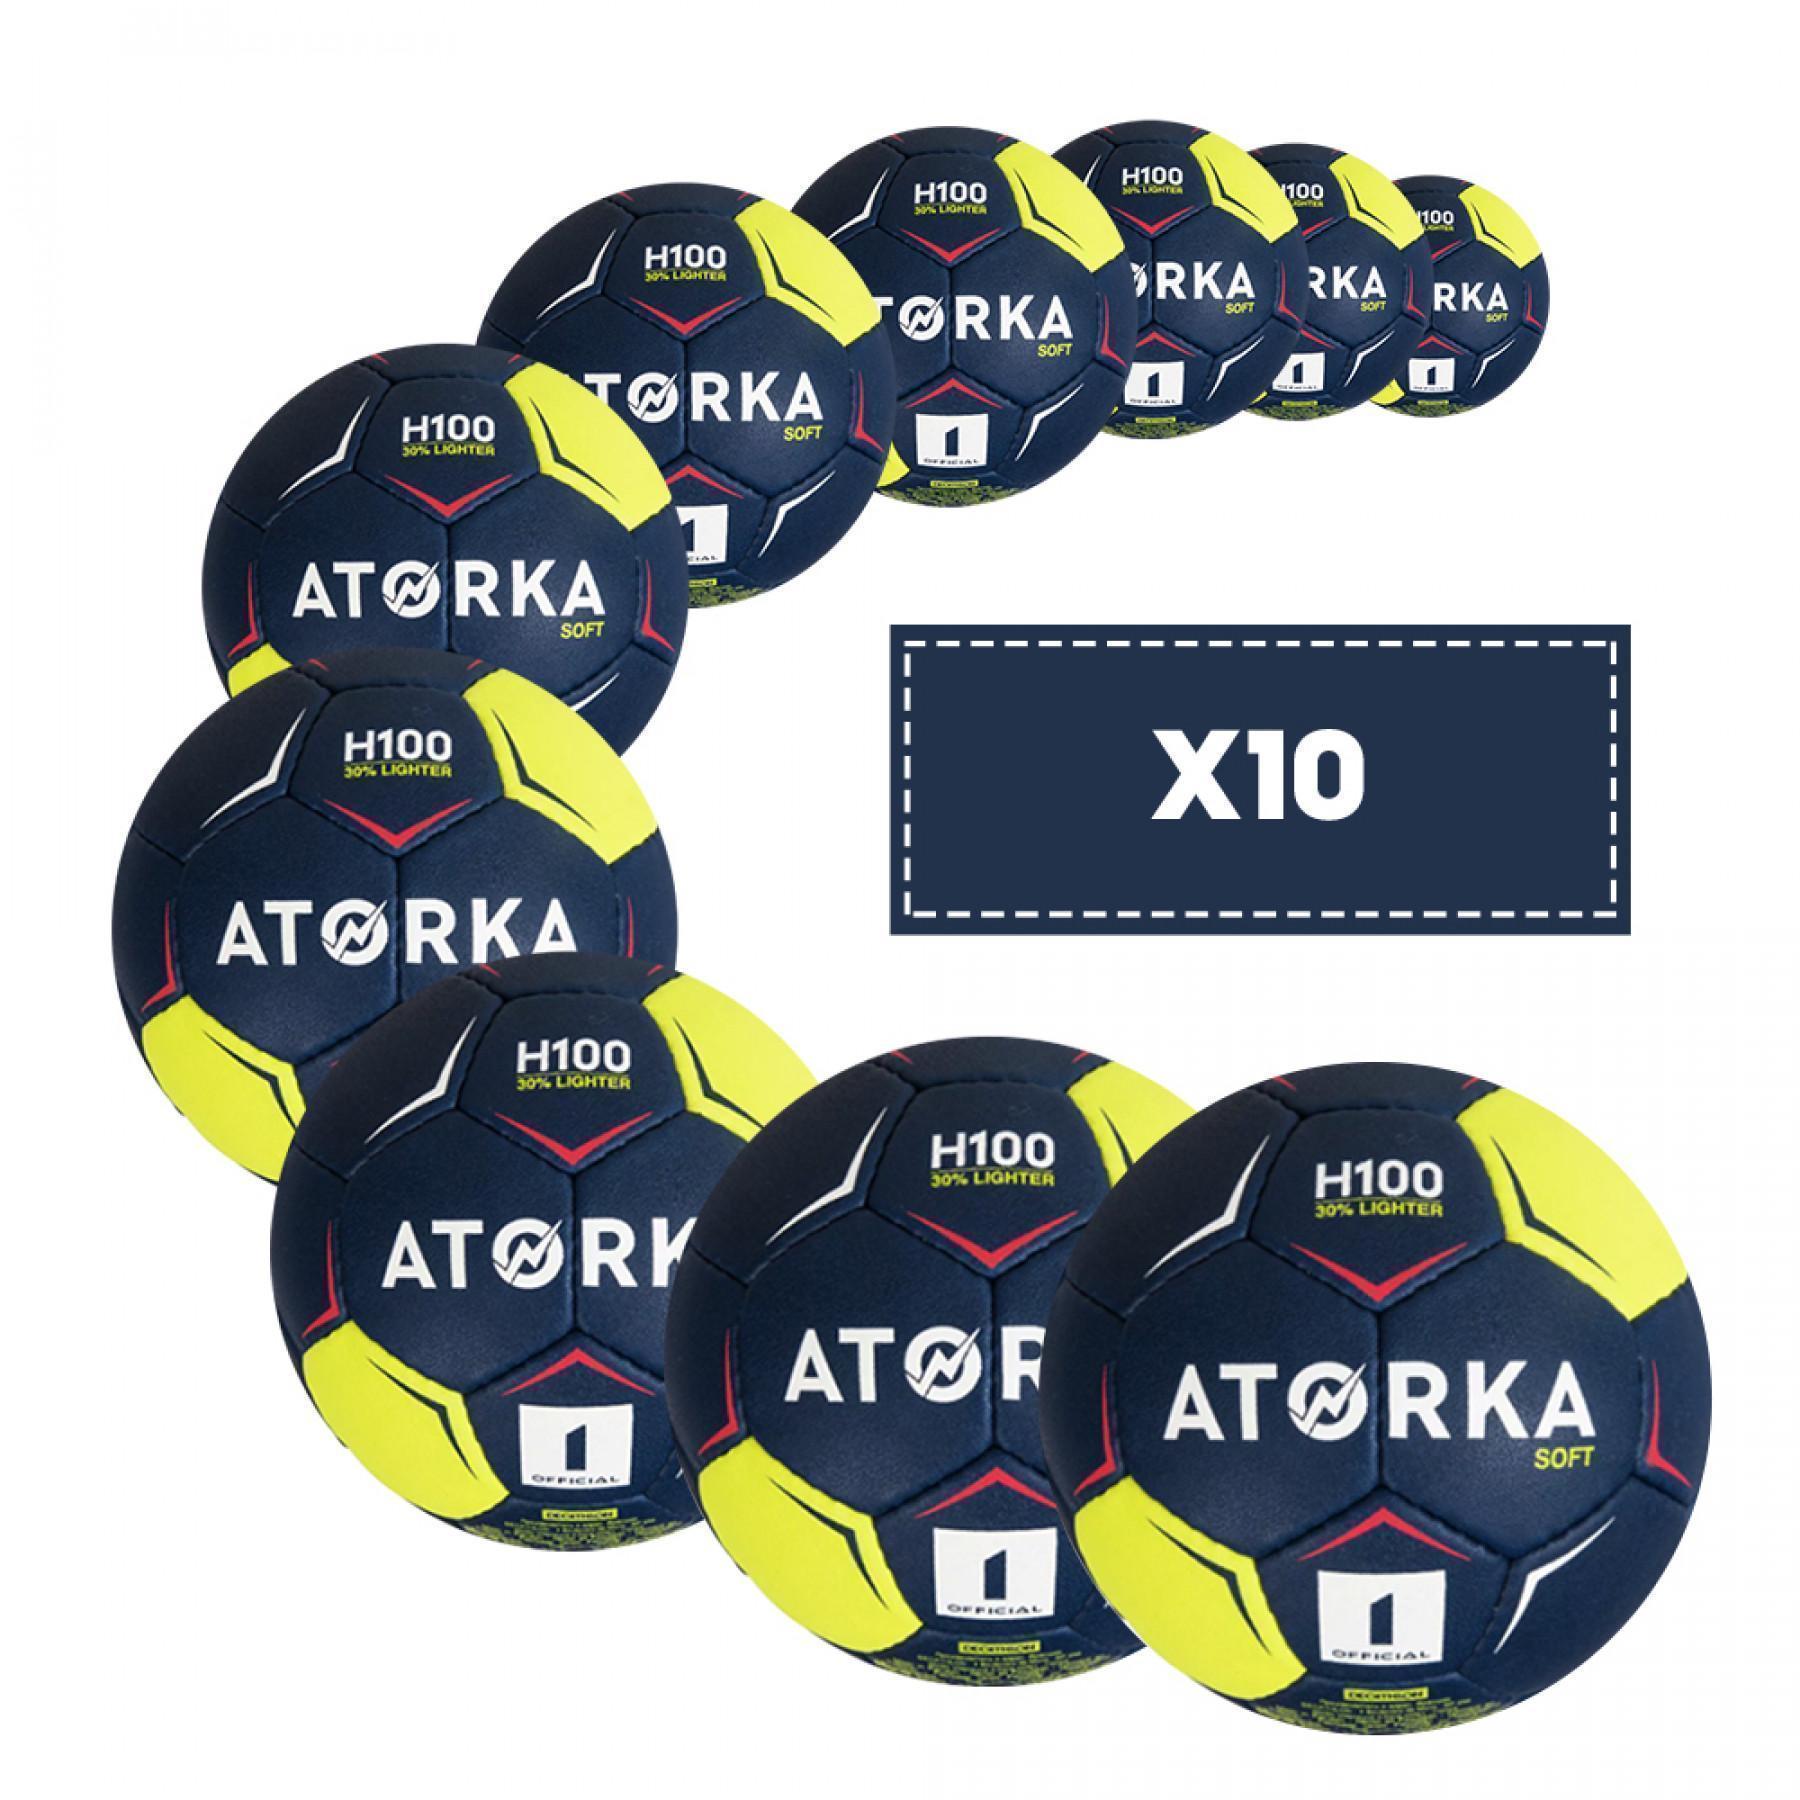 Set van 10 kinderballonnen Atorka H100 Soft - Taille 1